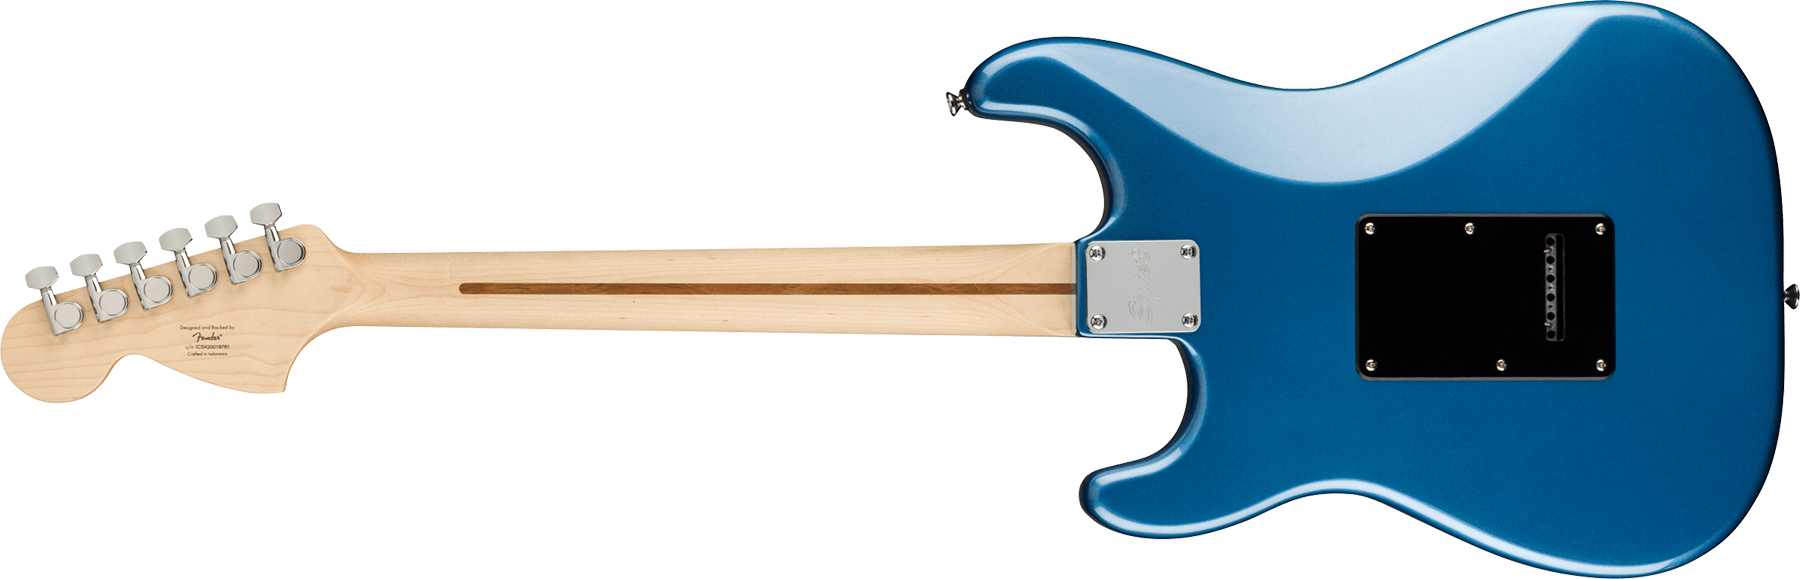 Squier Strat Affinity 2021 Sss Trem Mn - Lake Placid Blue - Elektrische gitaar in Str-vorm - Variation 1